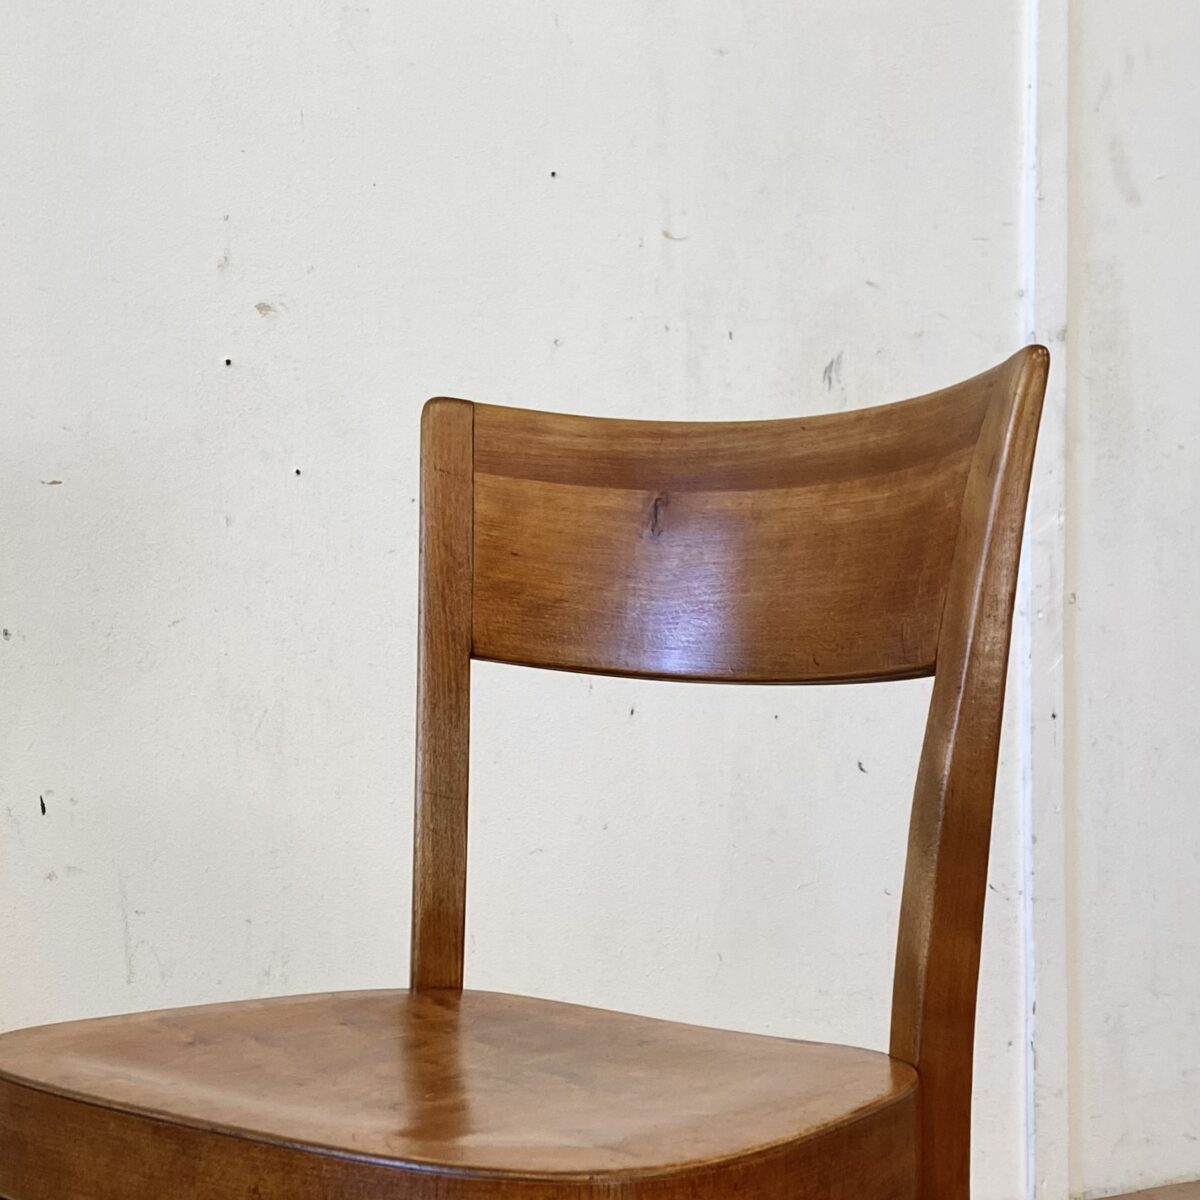 Deuxieme.shop horgenglaruschairs. 5er Set Beizenstühle mit Kastanienbrauner Alterspatina, von Horgenglarus. Die Stühle sind in gutem stabilen Zustand, technische Mängel wie wacklige Vorderbeine sind frisch eingeleimt. Zwei Stühle haben vorne leider eine durchgehende Schraube. Zwei weitere Stühle in ähnlicher Form sind auf den letzten Bildern. 